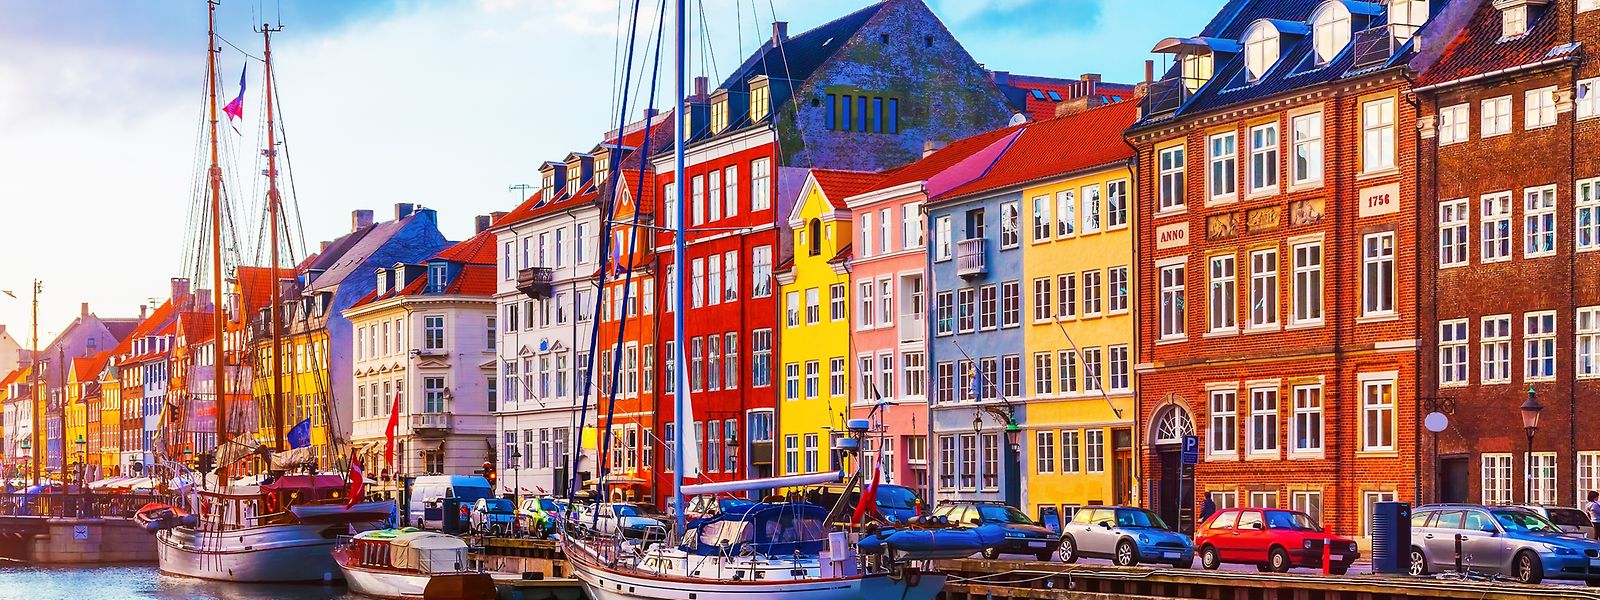 Kopenhagen, die dänische Hauptstadt, ist eine der expliziten Reiseempfehlungen eines international bekannten Reiseführers für dieses Jahr. 